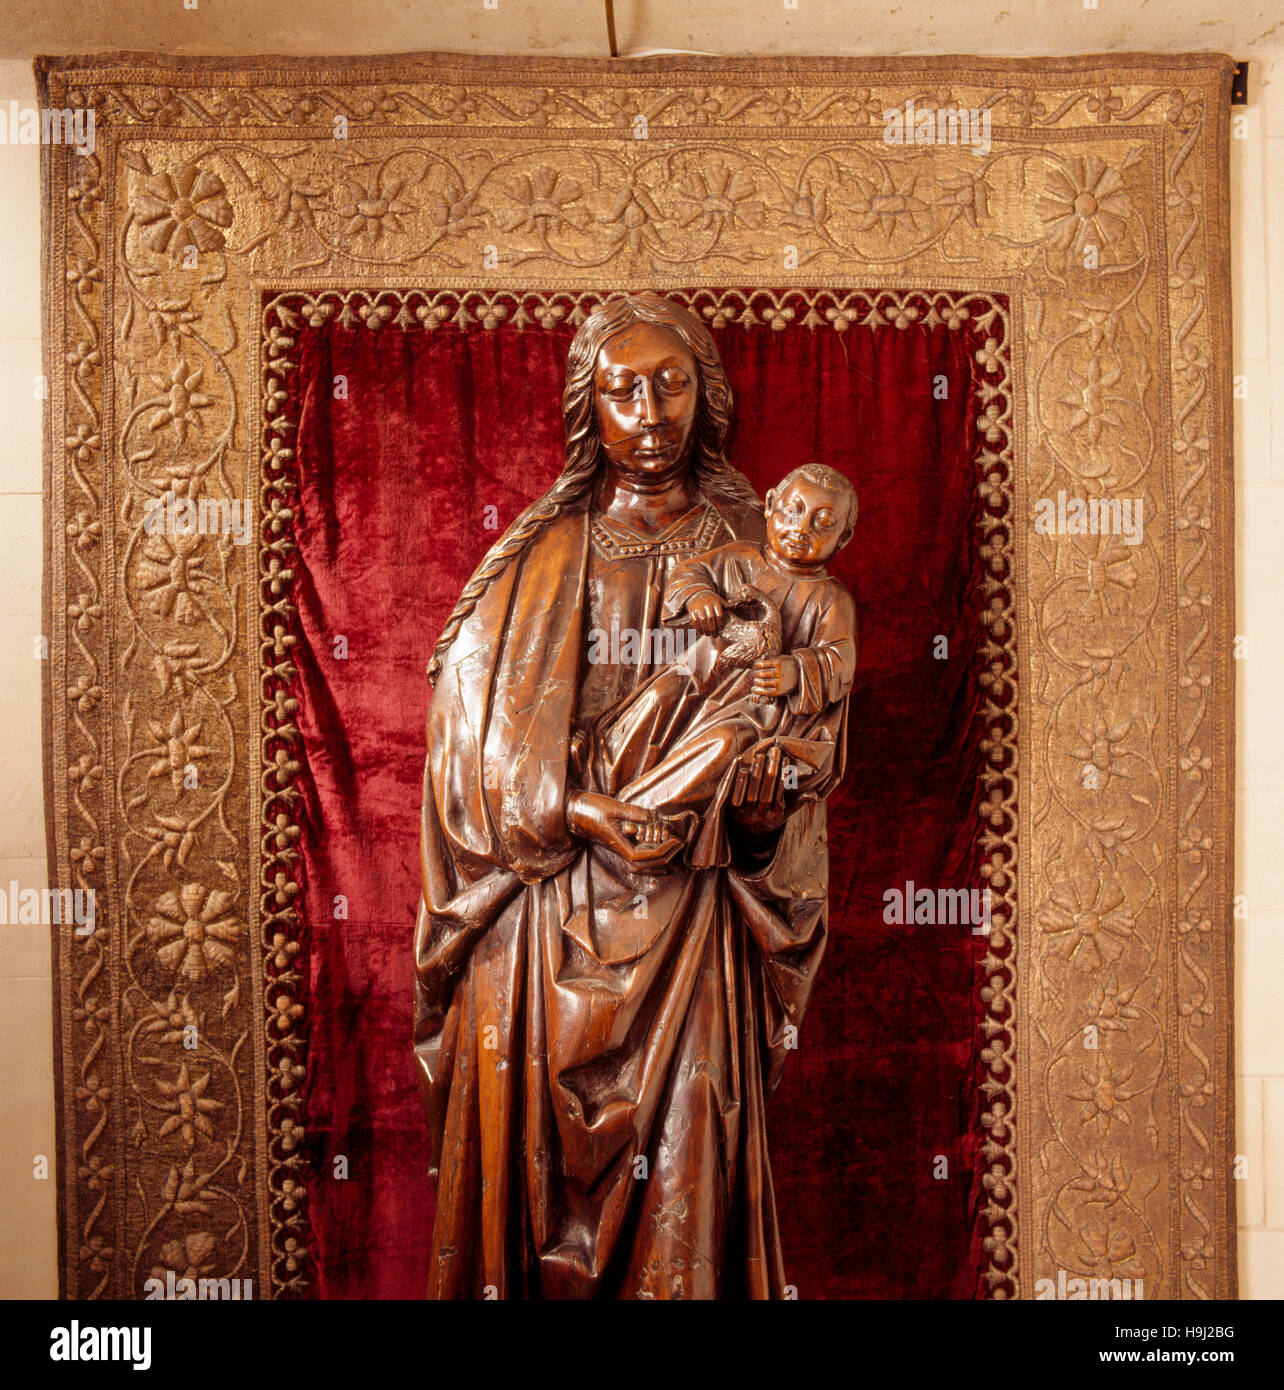 Nella lunga galleria, quasi a grandezza naturale in legno intagliato la figura della Vergine e il bambino in frame, nell'alcova. Esso è stato scolpito nel Nord Europa nell'earl Foto Stock